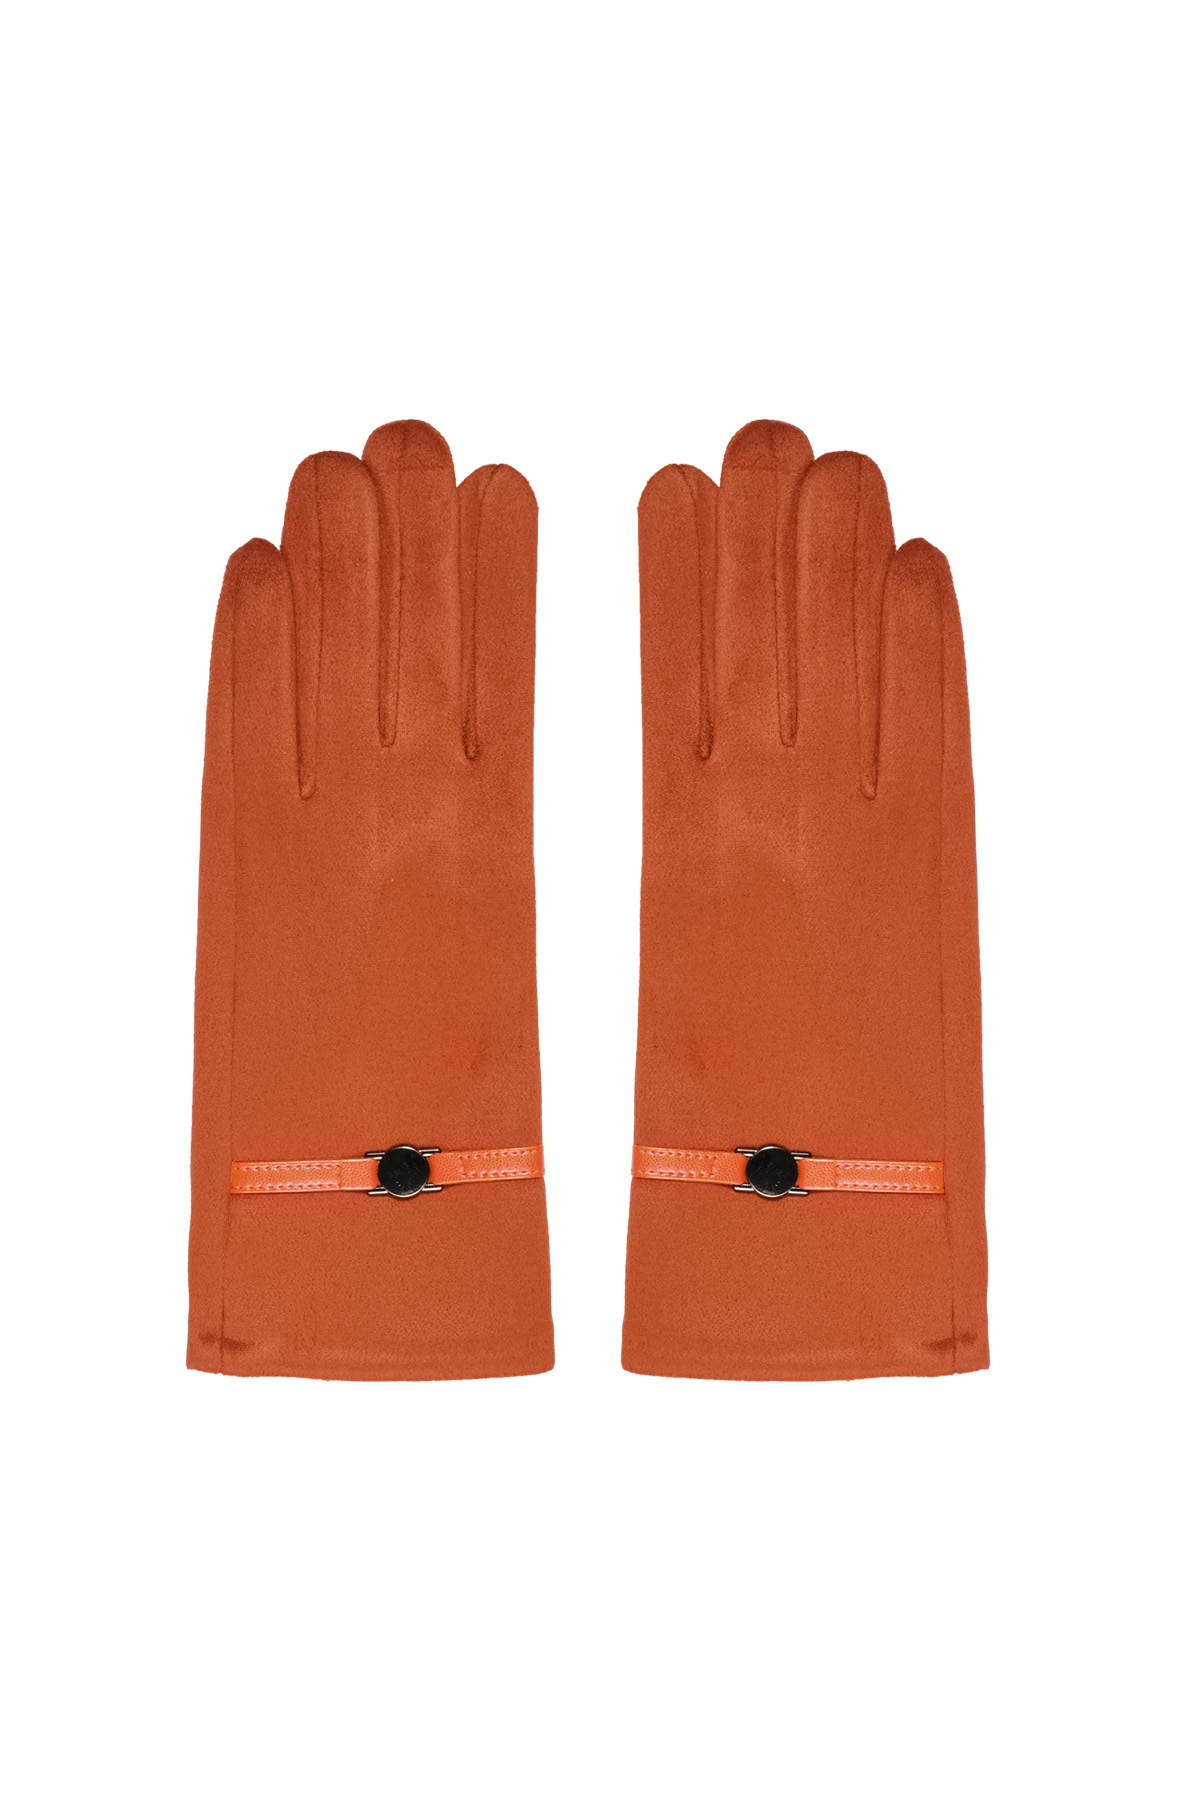 Gloves shouted - orange h5 